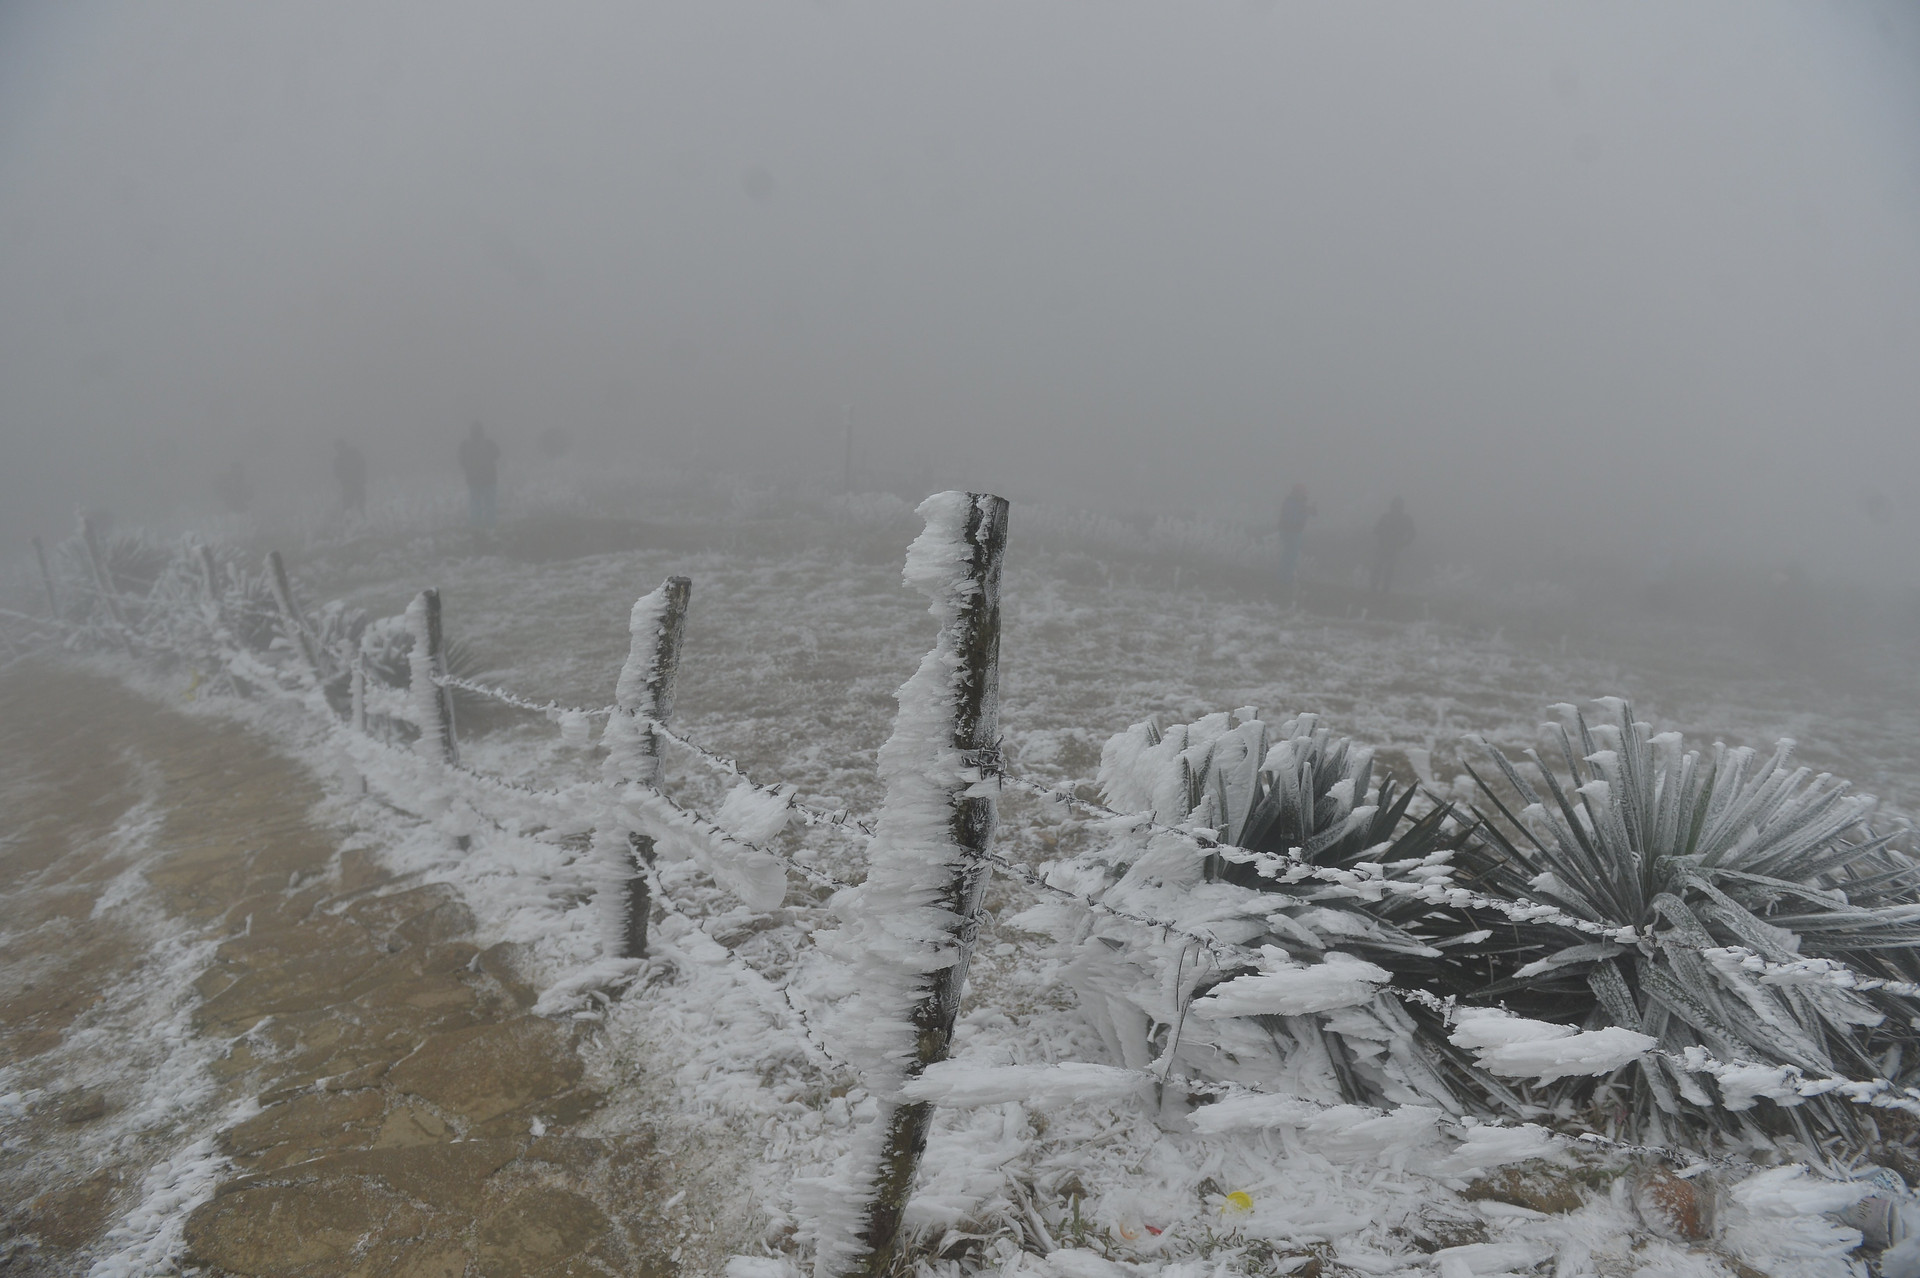 Mùa Đông ở trên đỉnh Mẫu Sơn rất lạnh, nhiệt độ có thể xuống dưới 0 độ C và thường xuất hiện băng tuyết. Chính khí hậu đặc biệt này khiến Mẫu Sơn trở thành điểm thu hút khách du lịch.